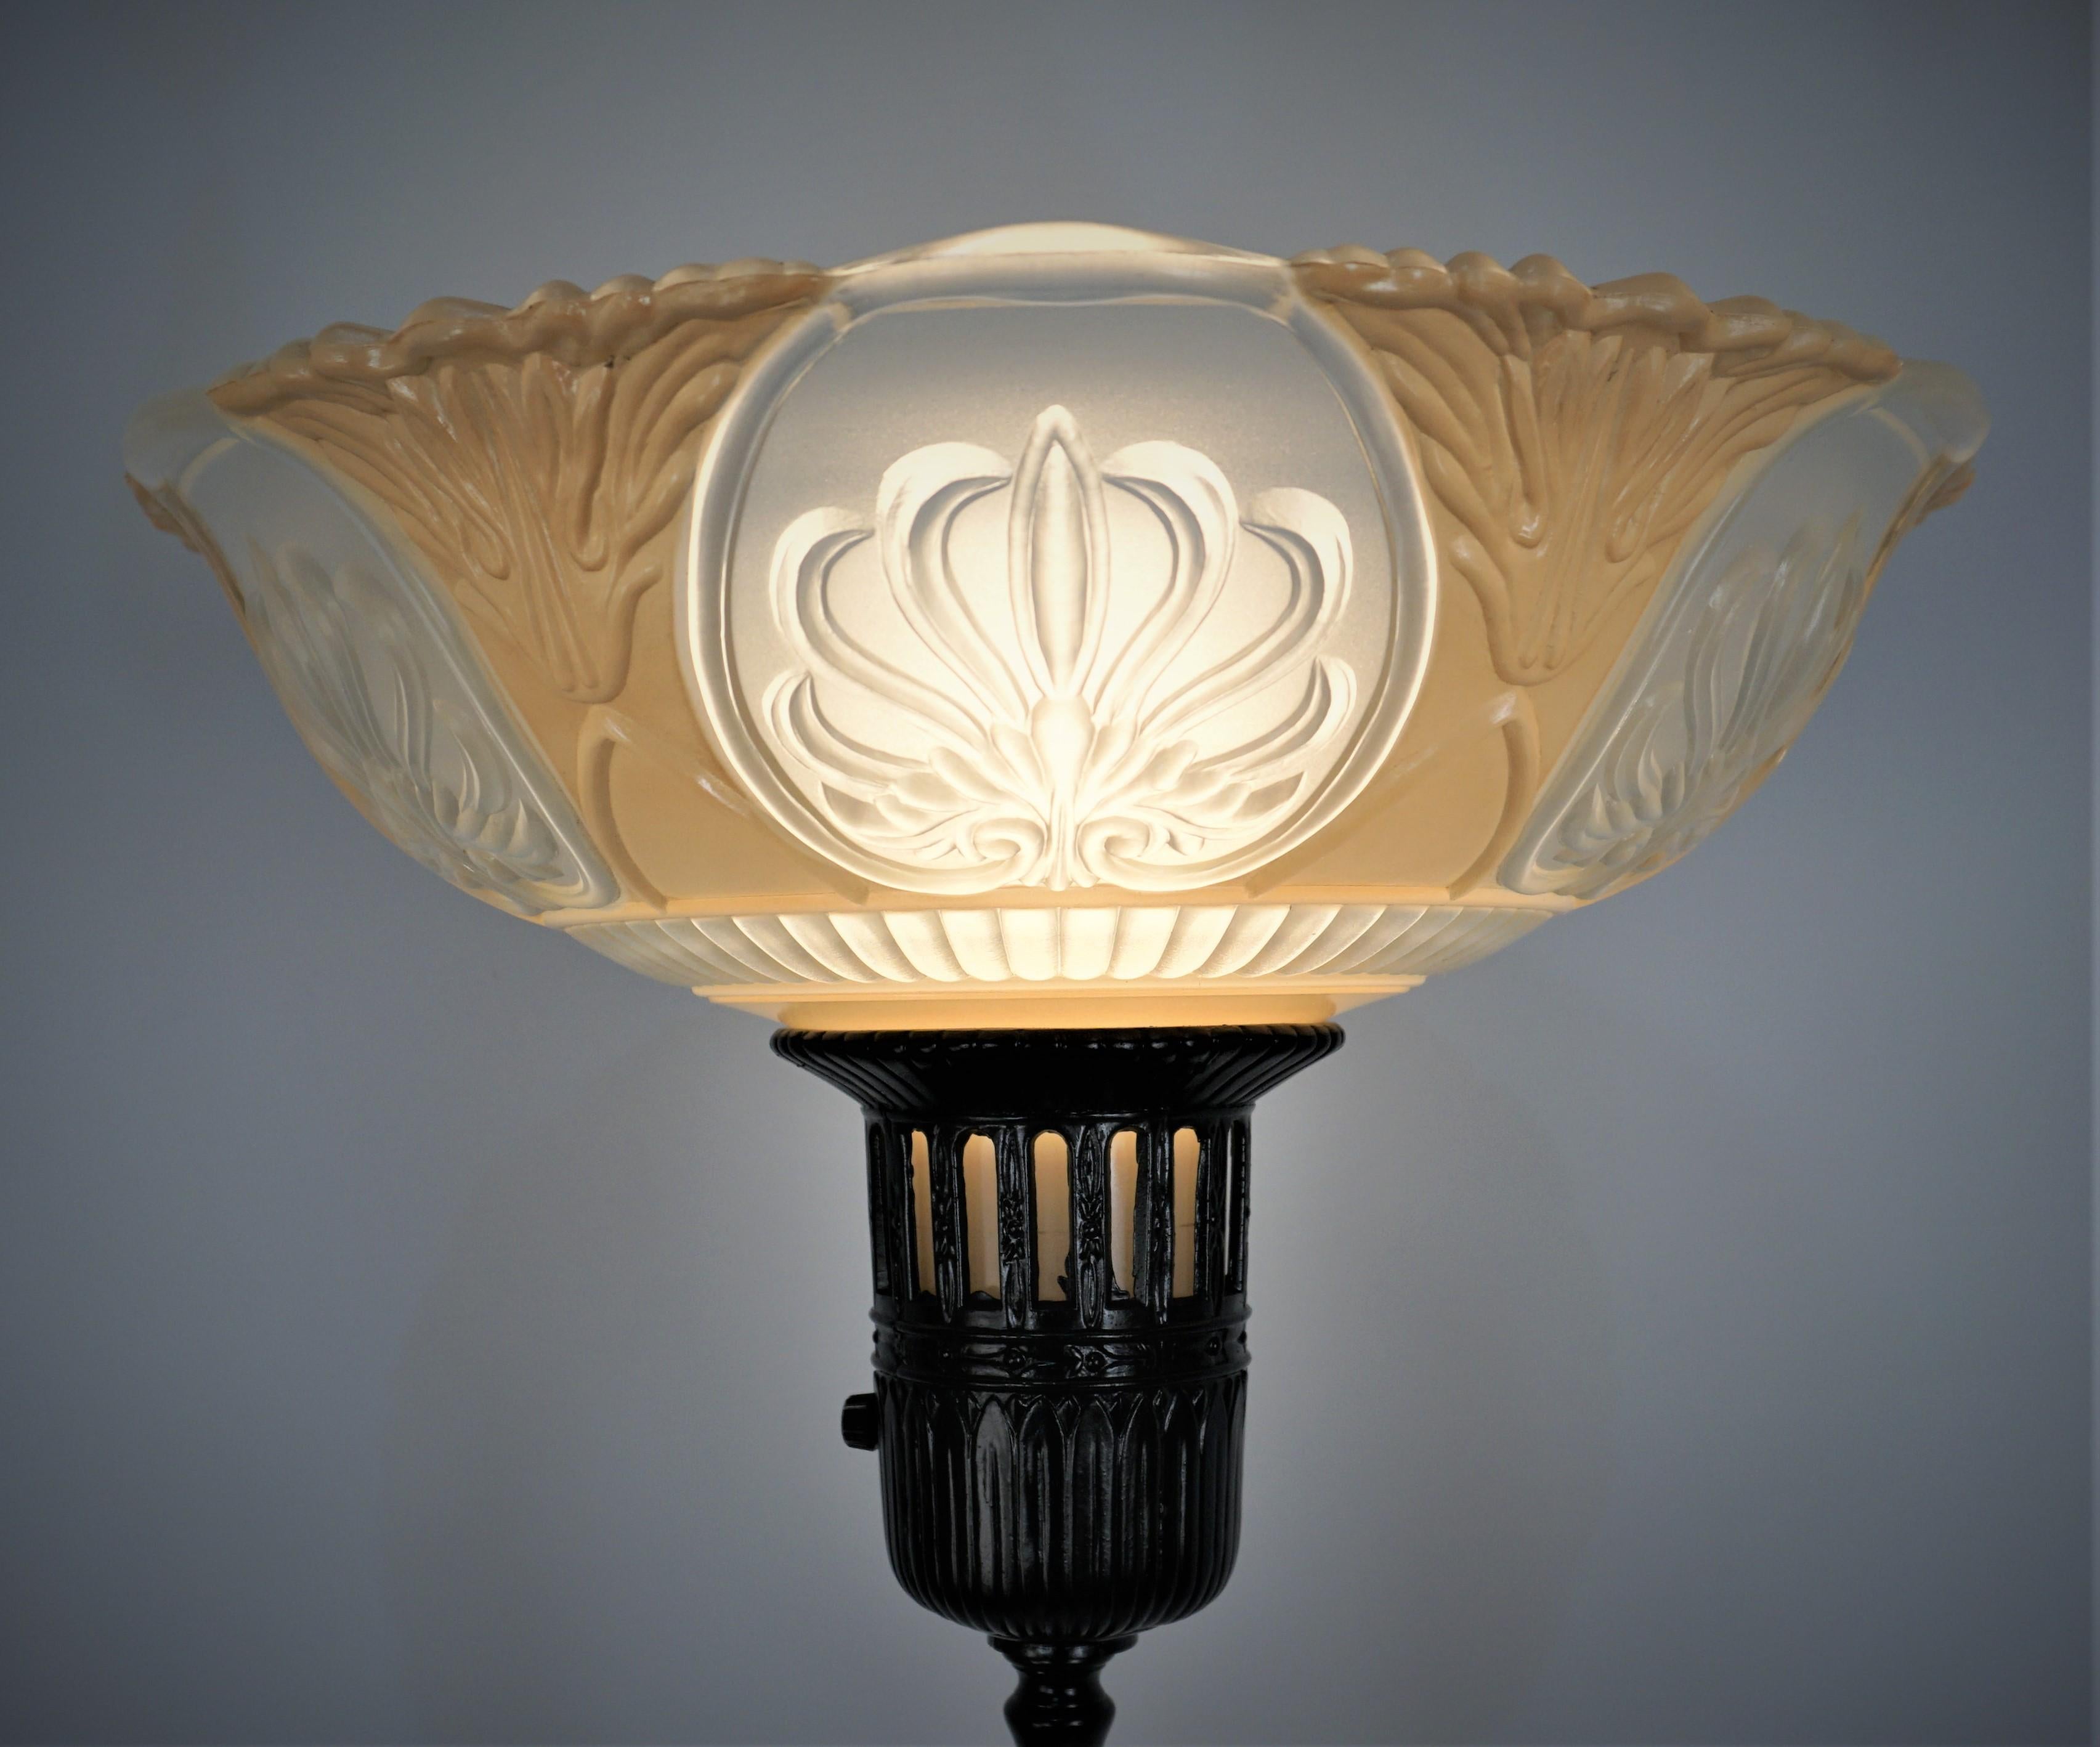 Elegante schwarz lackierte amerikanische Stehlampe aus den 19230er Jahren mit originalem Glasschirm.
3-Wege-Leuchte 100-200-300v Watt. 